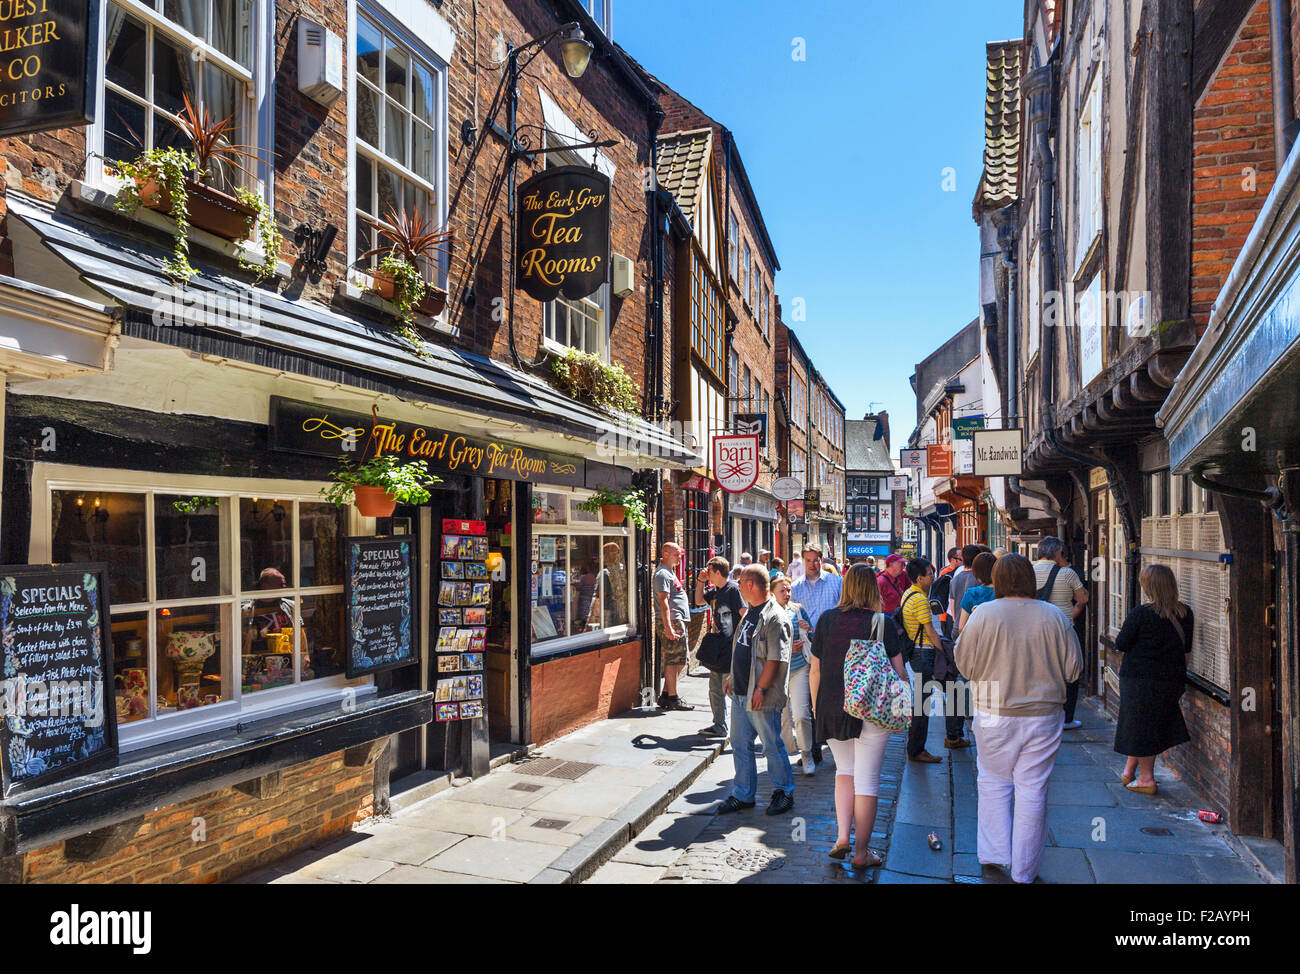 York UK, Shambles. Pubs, shops and cafes on the historic Shambles, York, England, UK Stock Photo